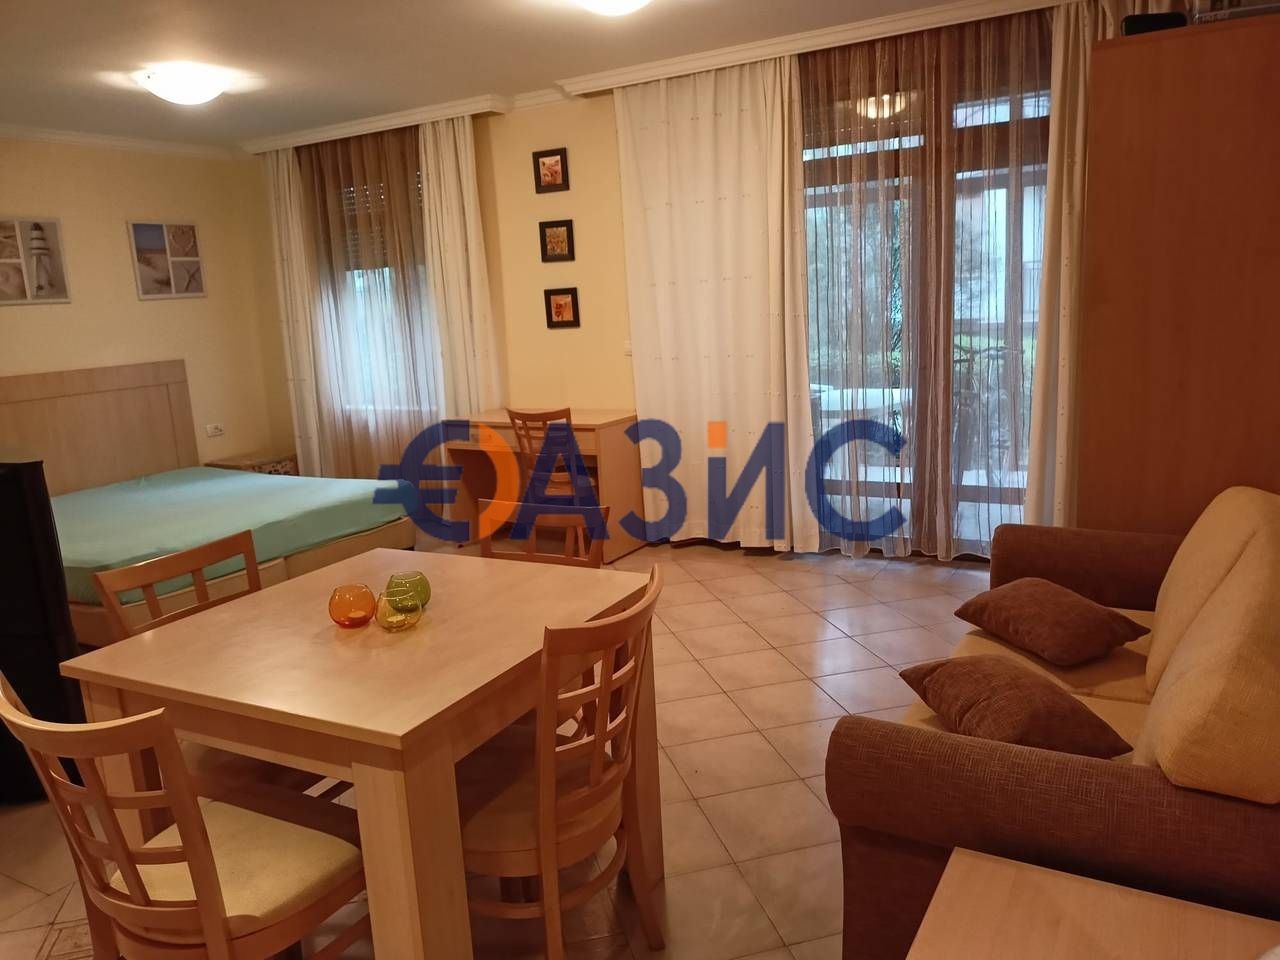 Apartment in Sozopol, Bulgaria, 54 sq.m - picture 1